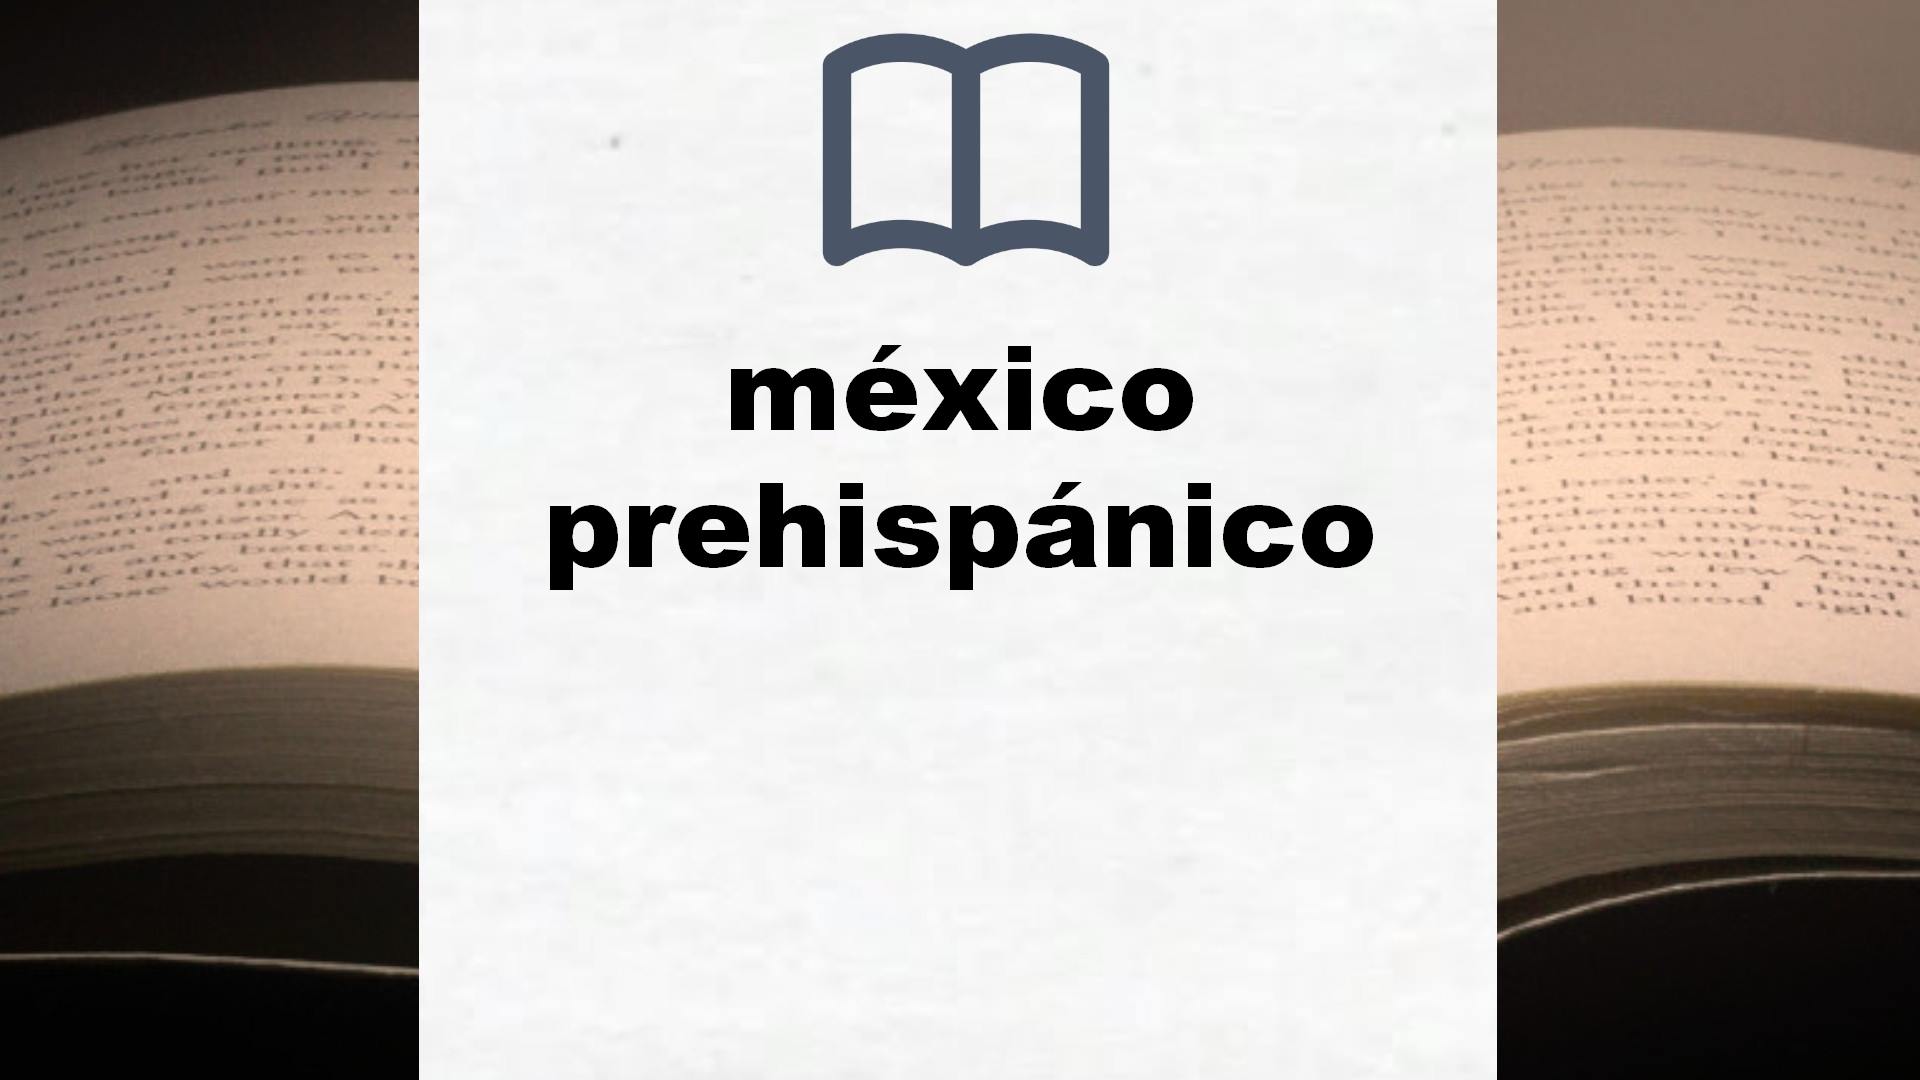 Libros sobre méxico prehispánico